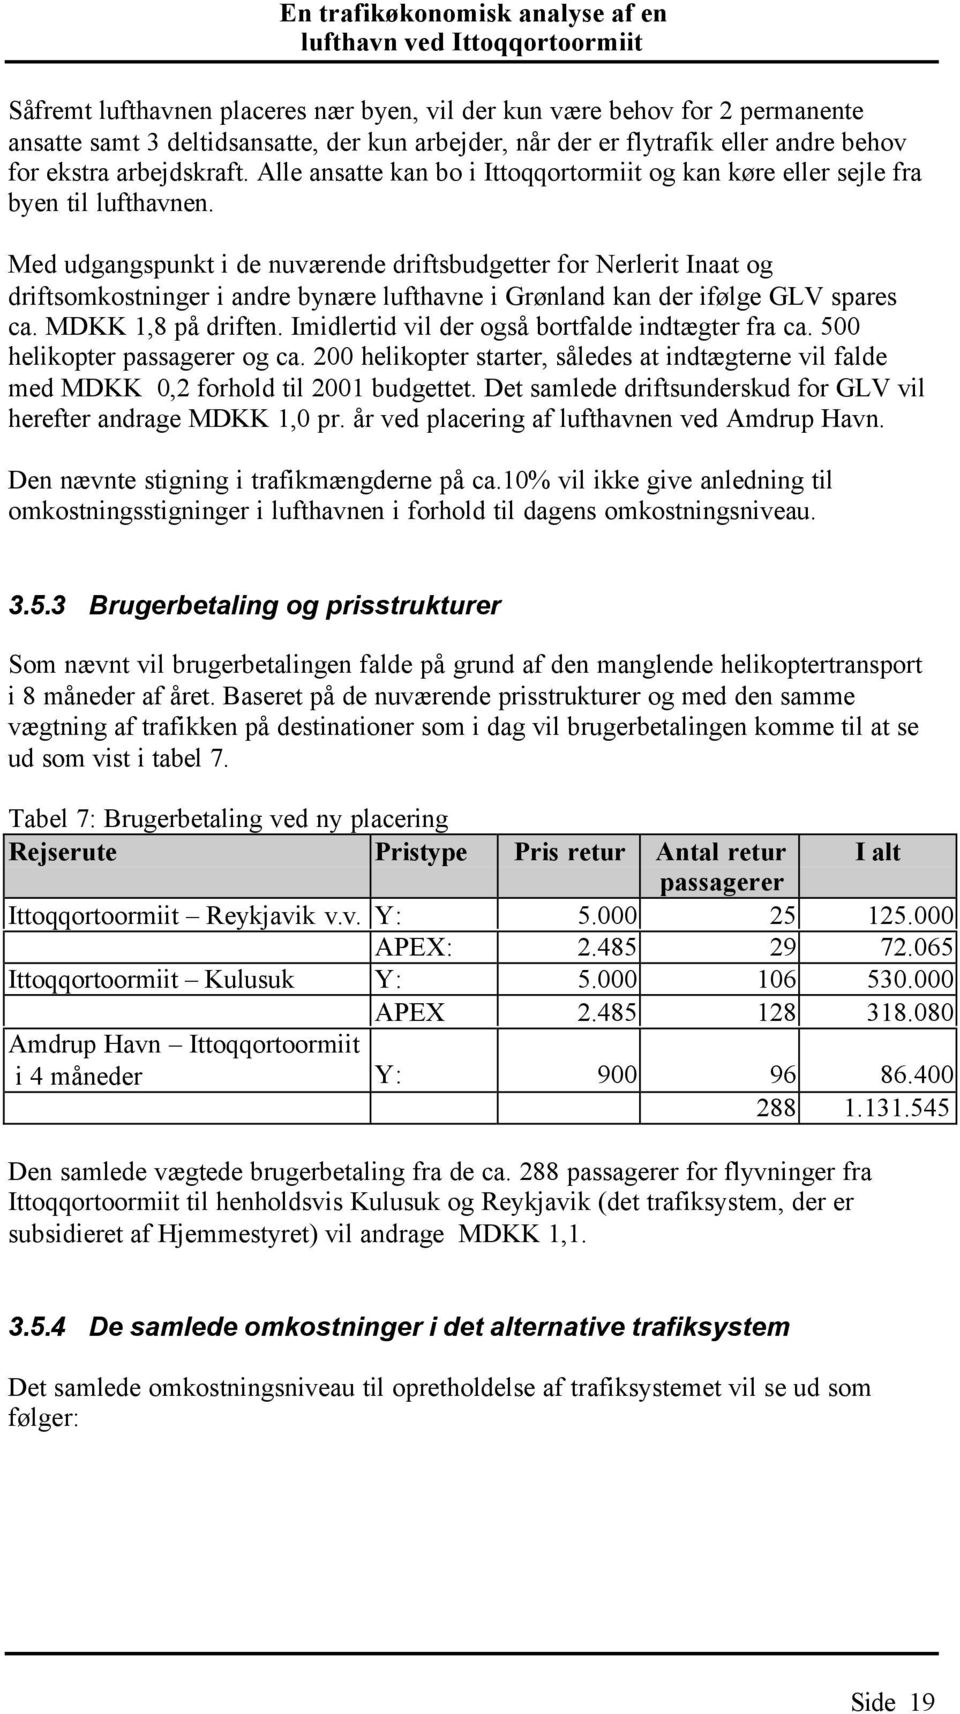 Med udgangspunkt i de nuværende driftsbudgetter for Nerlerit Inaat og driftsomkostninger i andre bynære lufthavne i Grønland kan der ifølge GLV spares ca. MDKK 1,8 på driften.